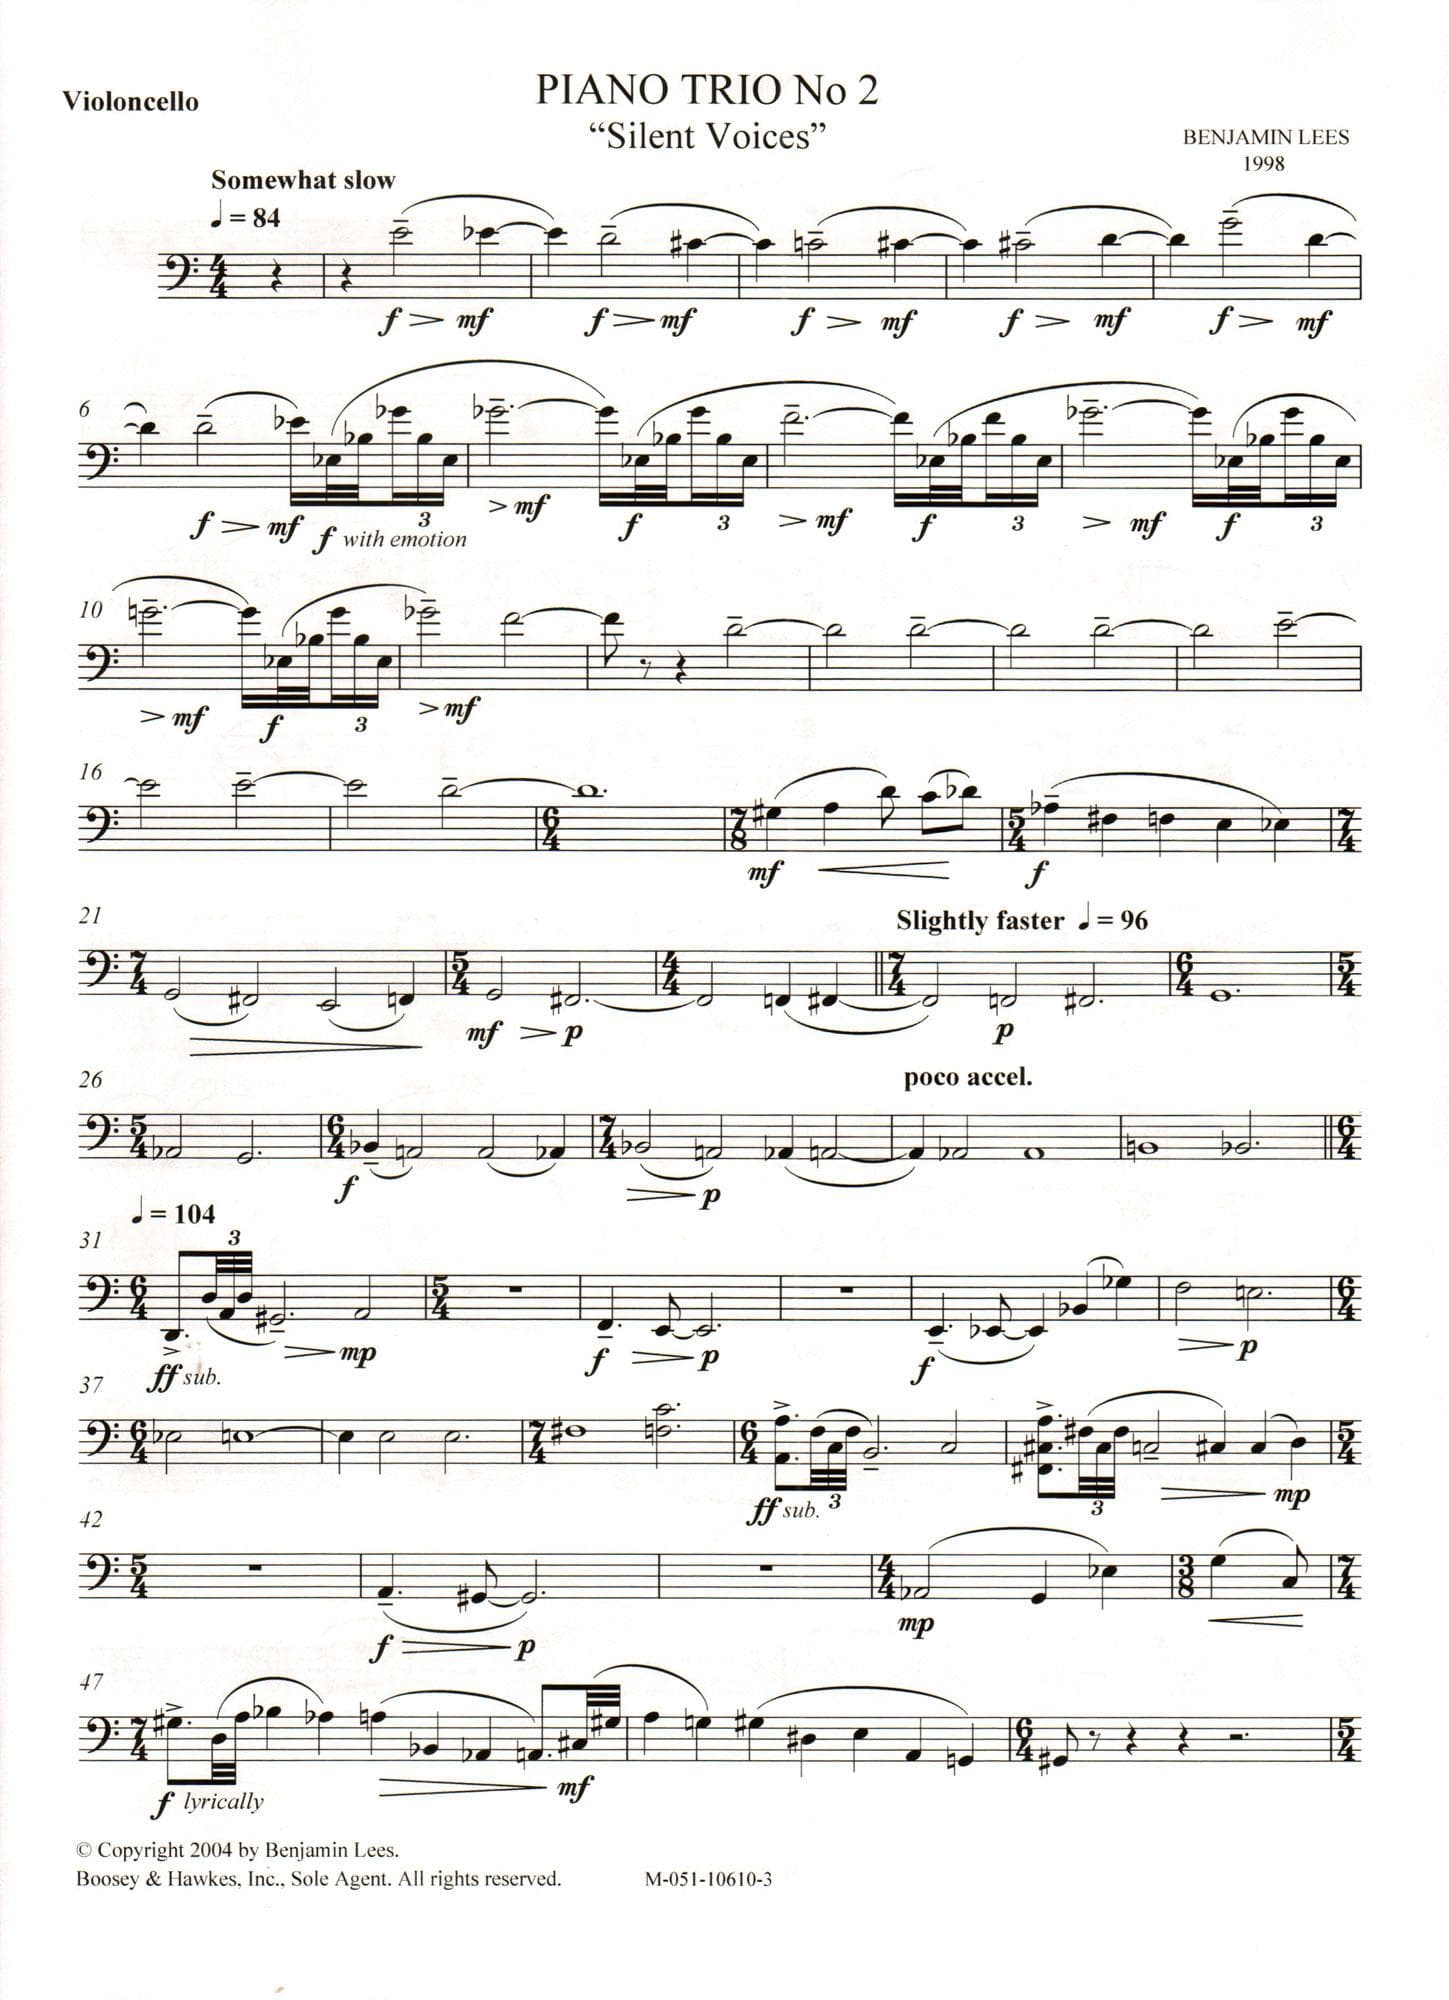 Lees, Benjamin - Piano Trio No. 2: "Silent Voices" - Violin, Cello, and Piano - Boosey & Hawkes Edition